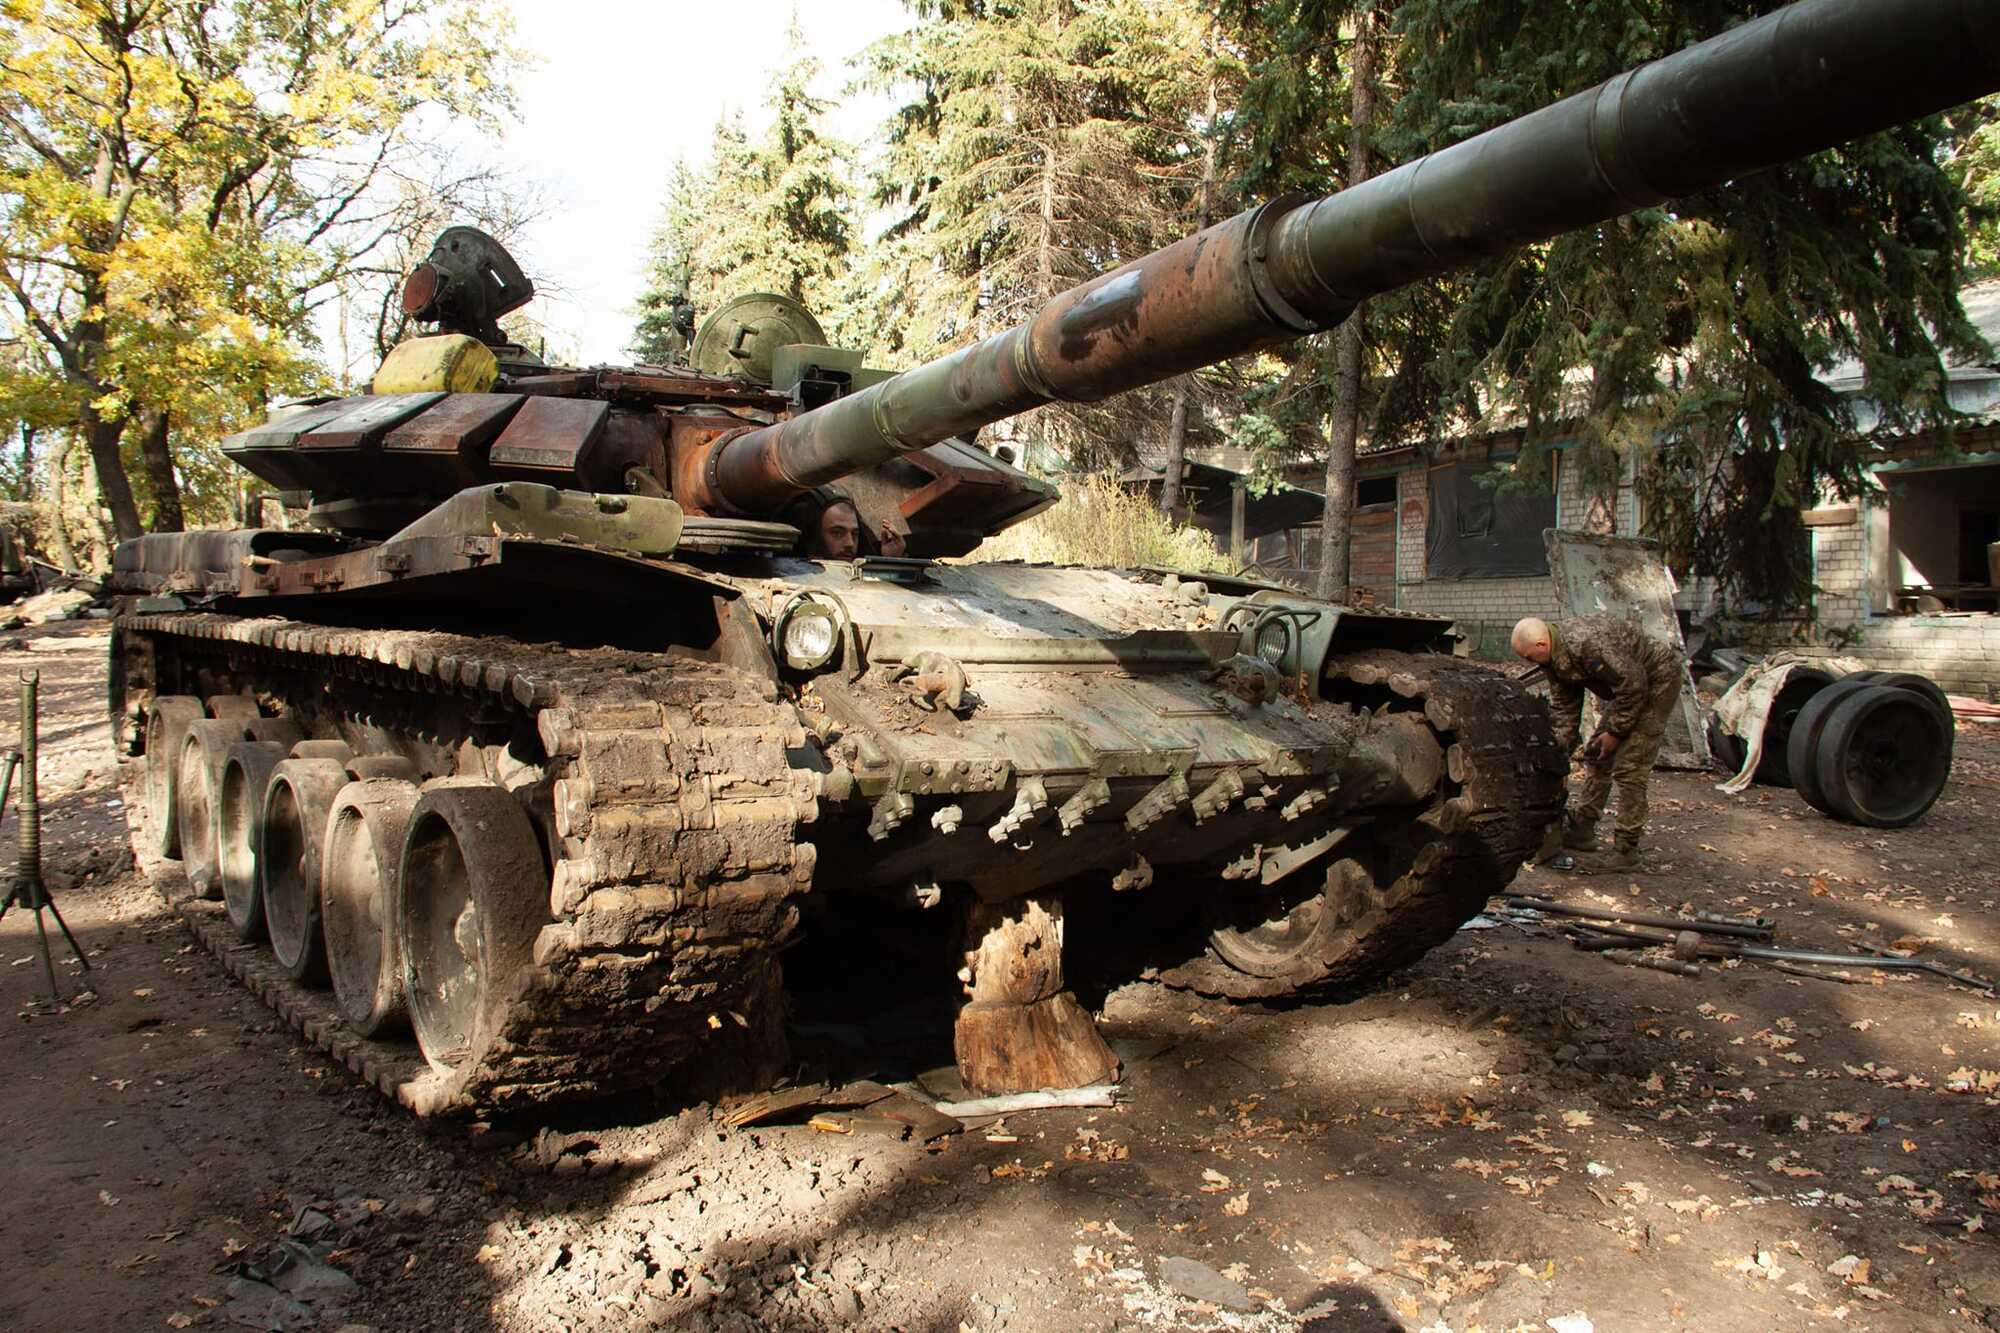 Российский ленд-лиз в действии: украинские воины захватили танк Т-72Б3, который бросили оккупанты. Фото трофея